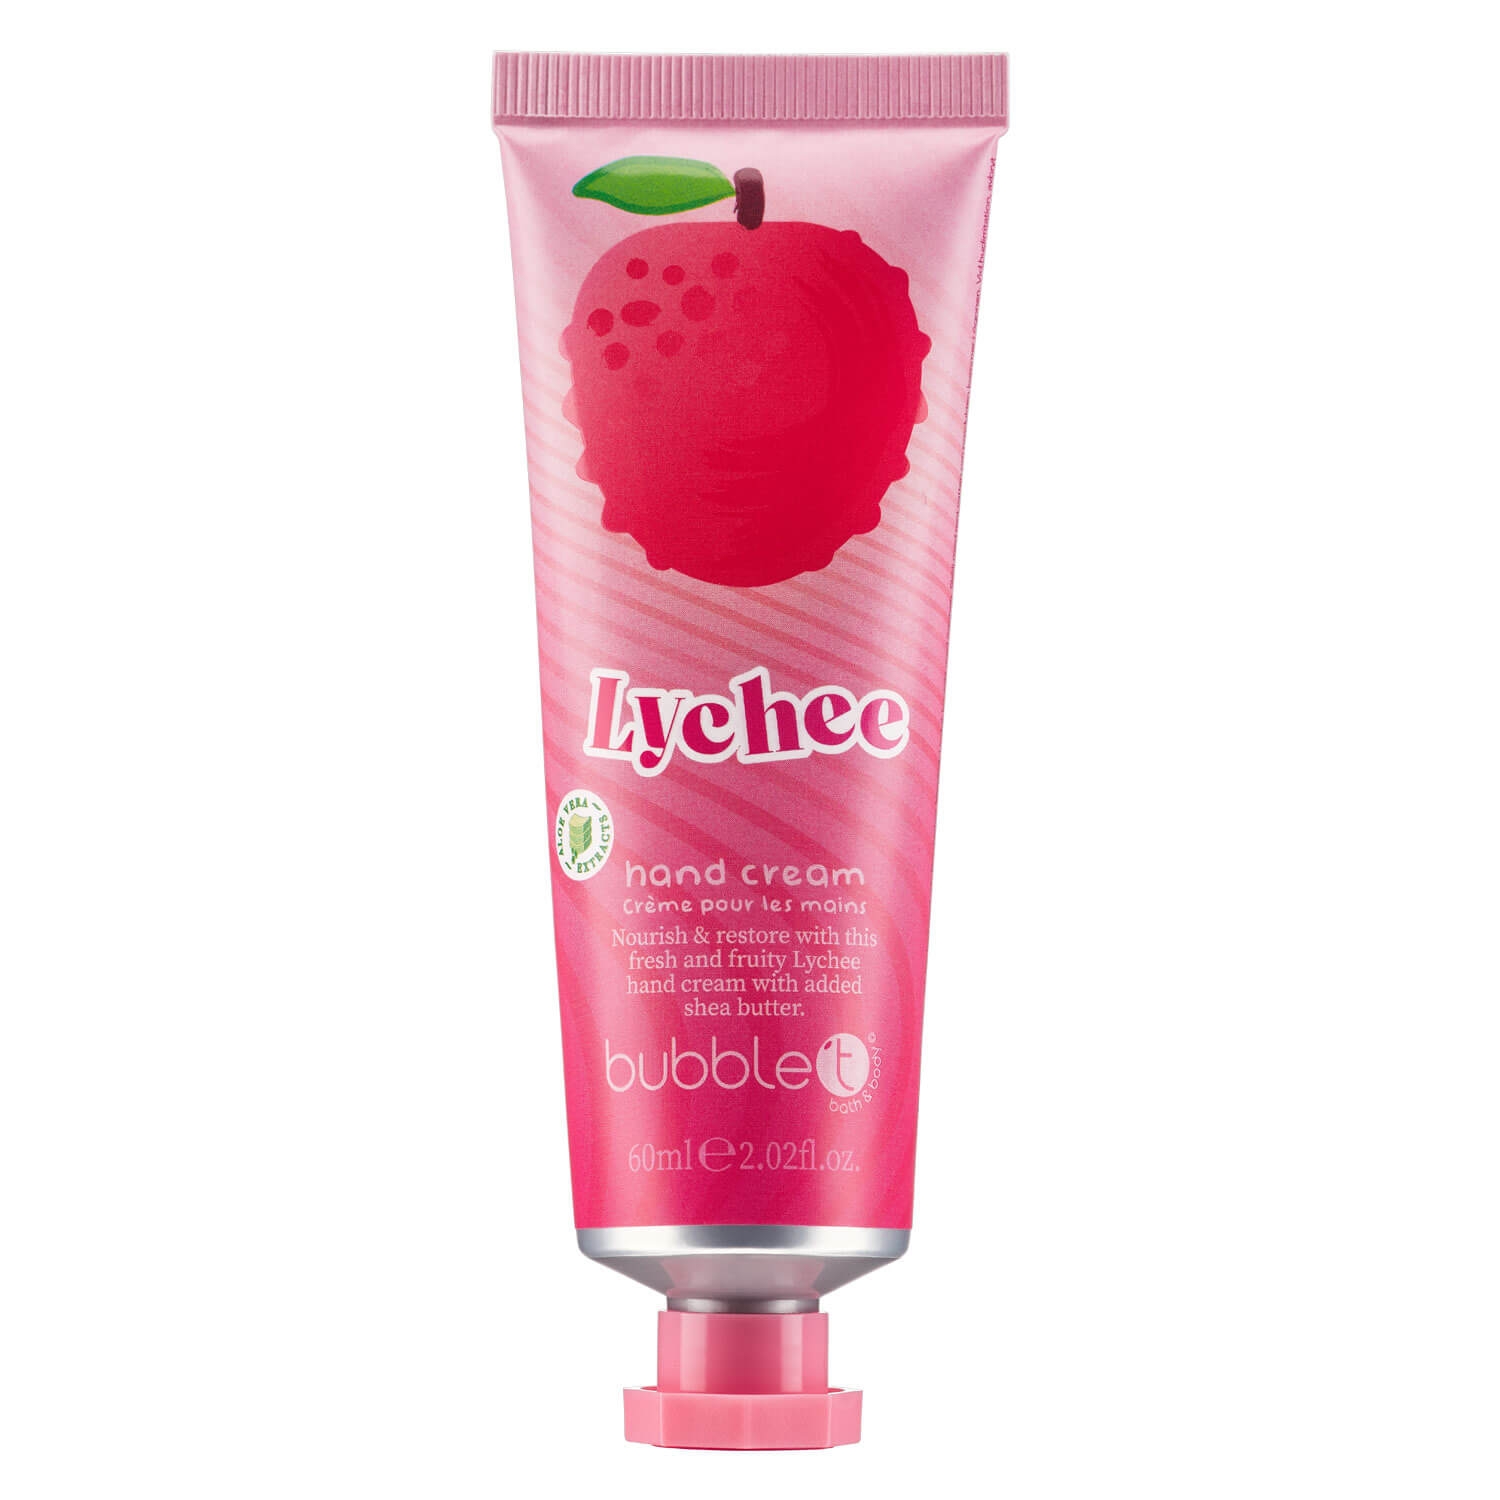 Produktbild von bubble t - Lychee Hand Cream